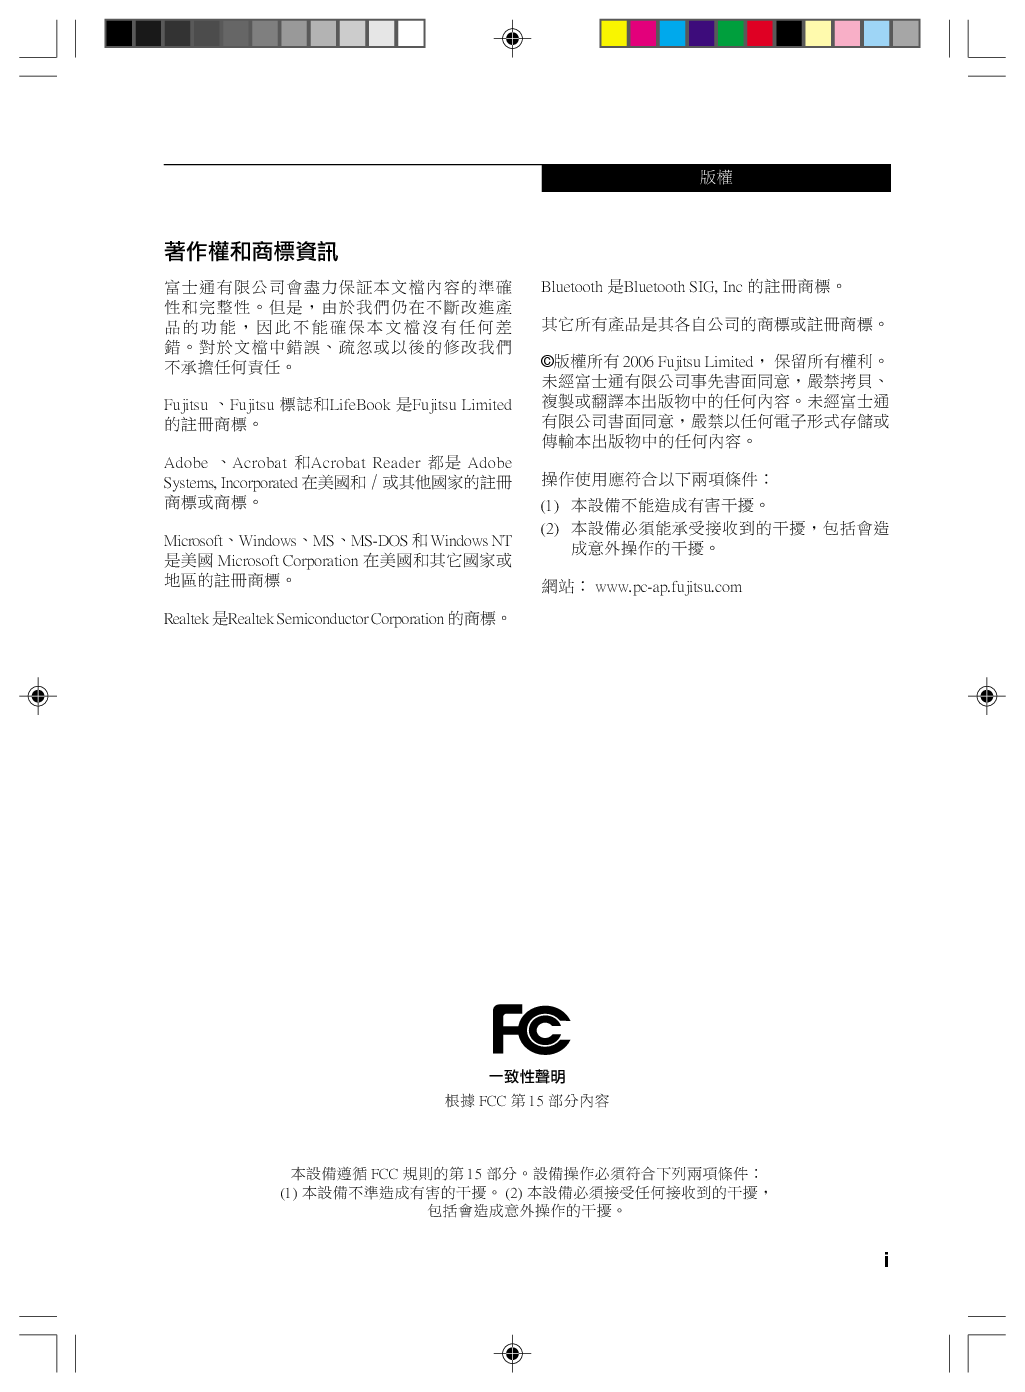 富士通 Fujitsu Lifebook P1610 繁体 使用说明书 封面